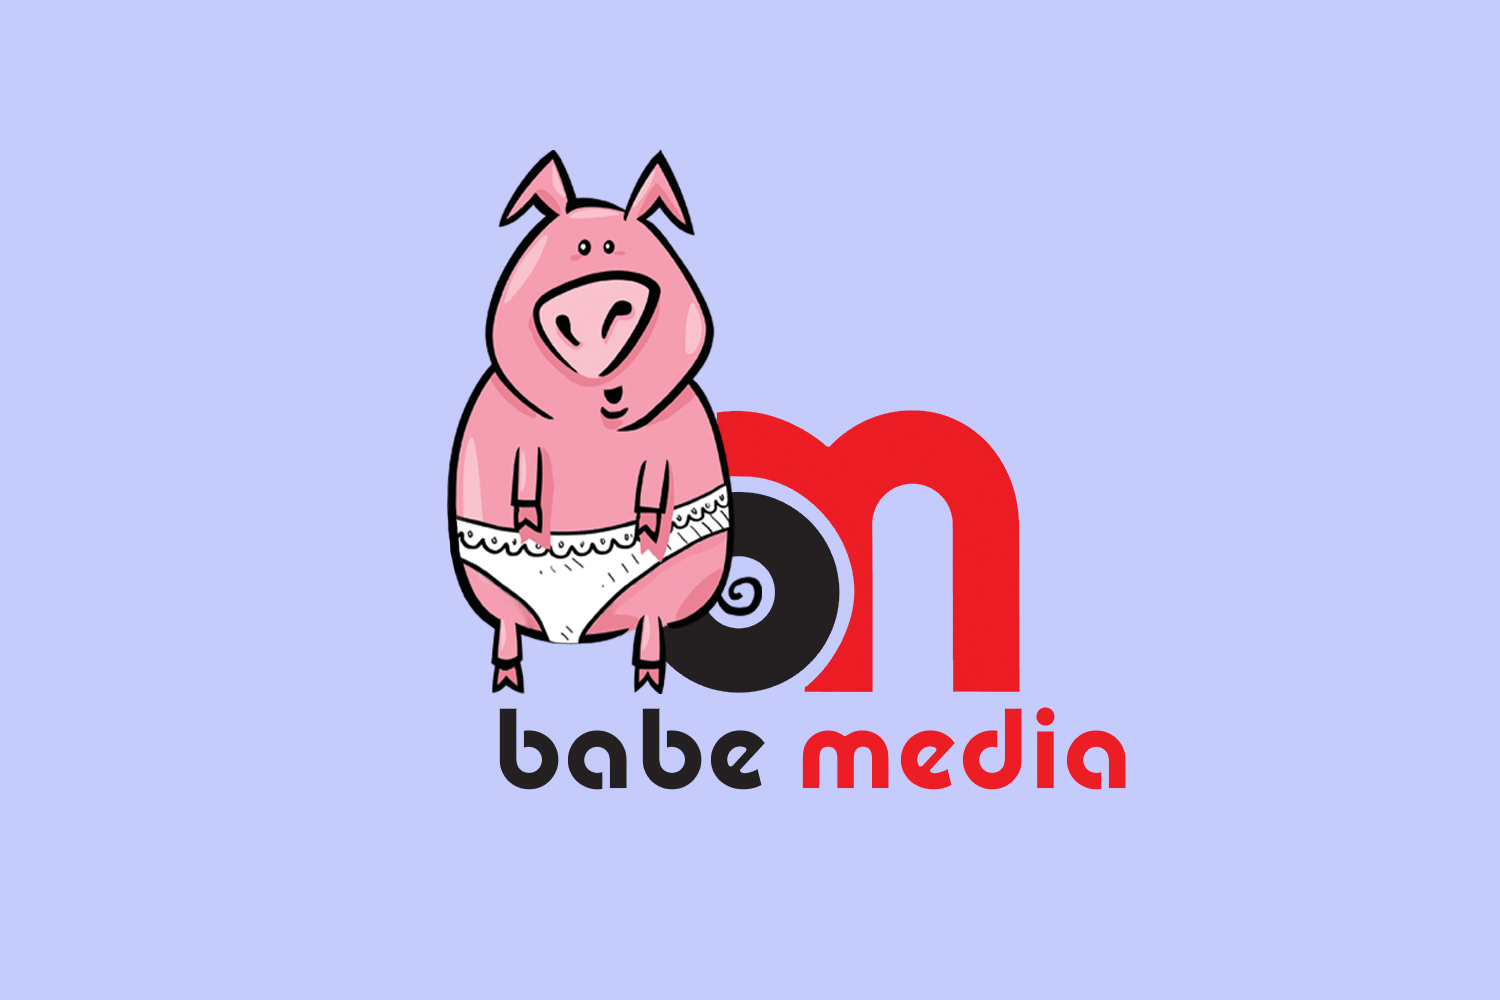 babe_media